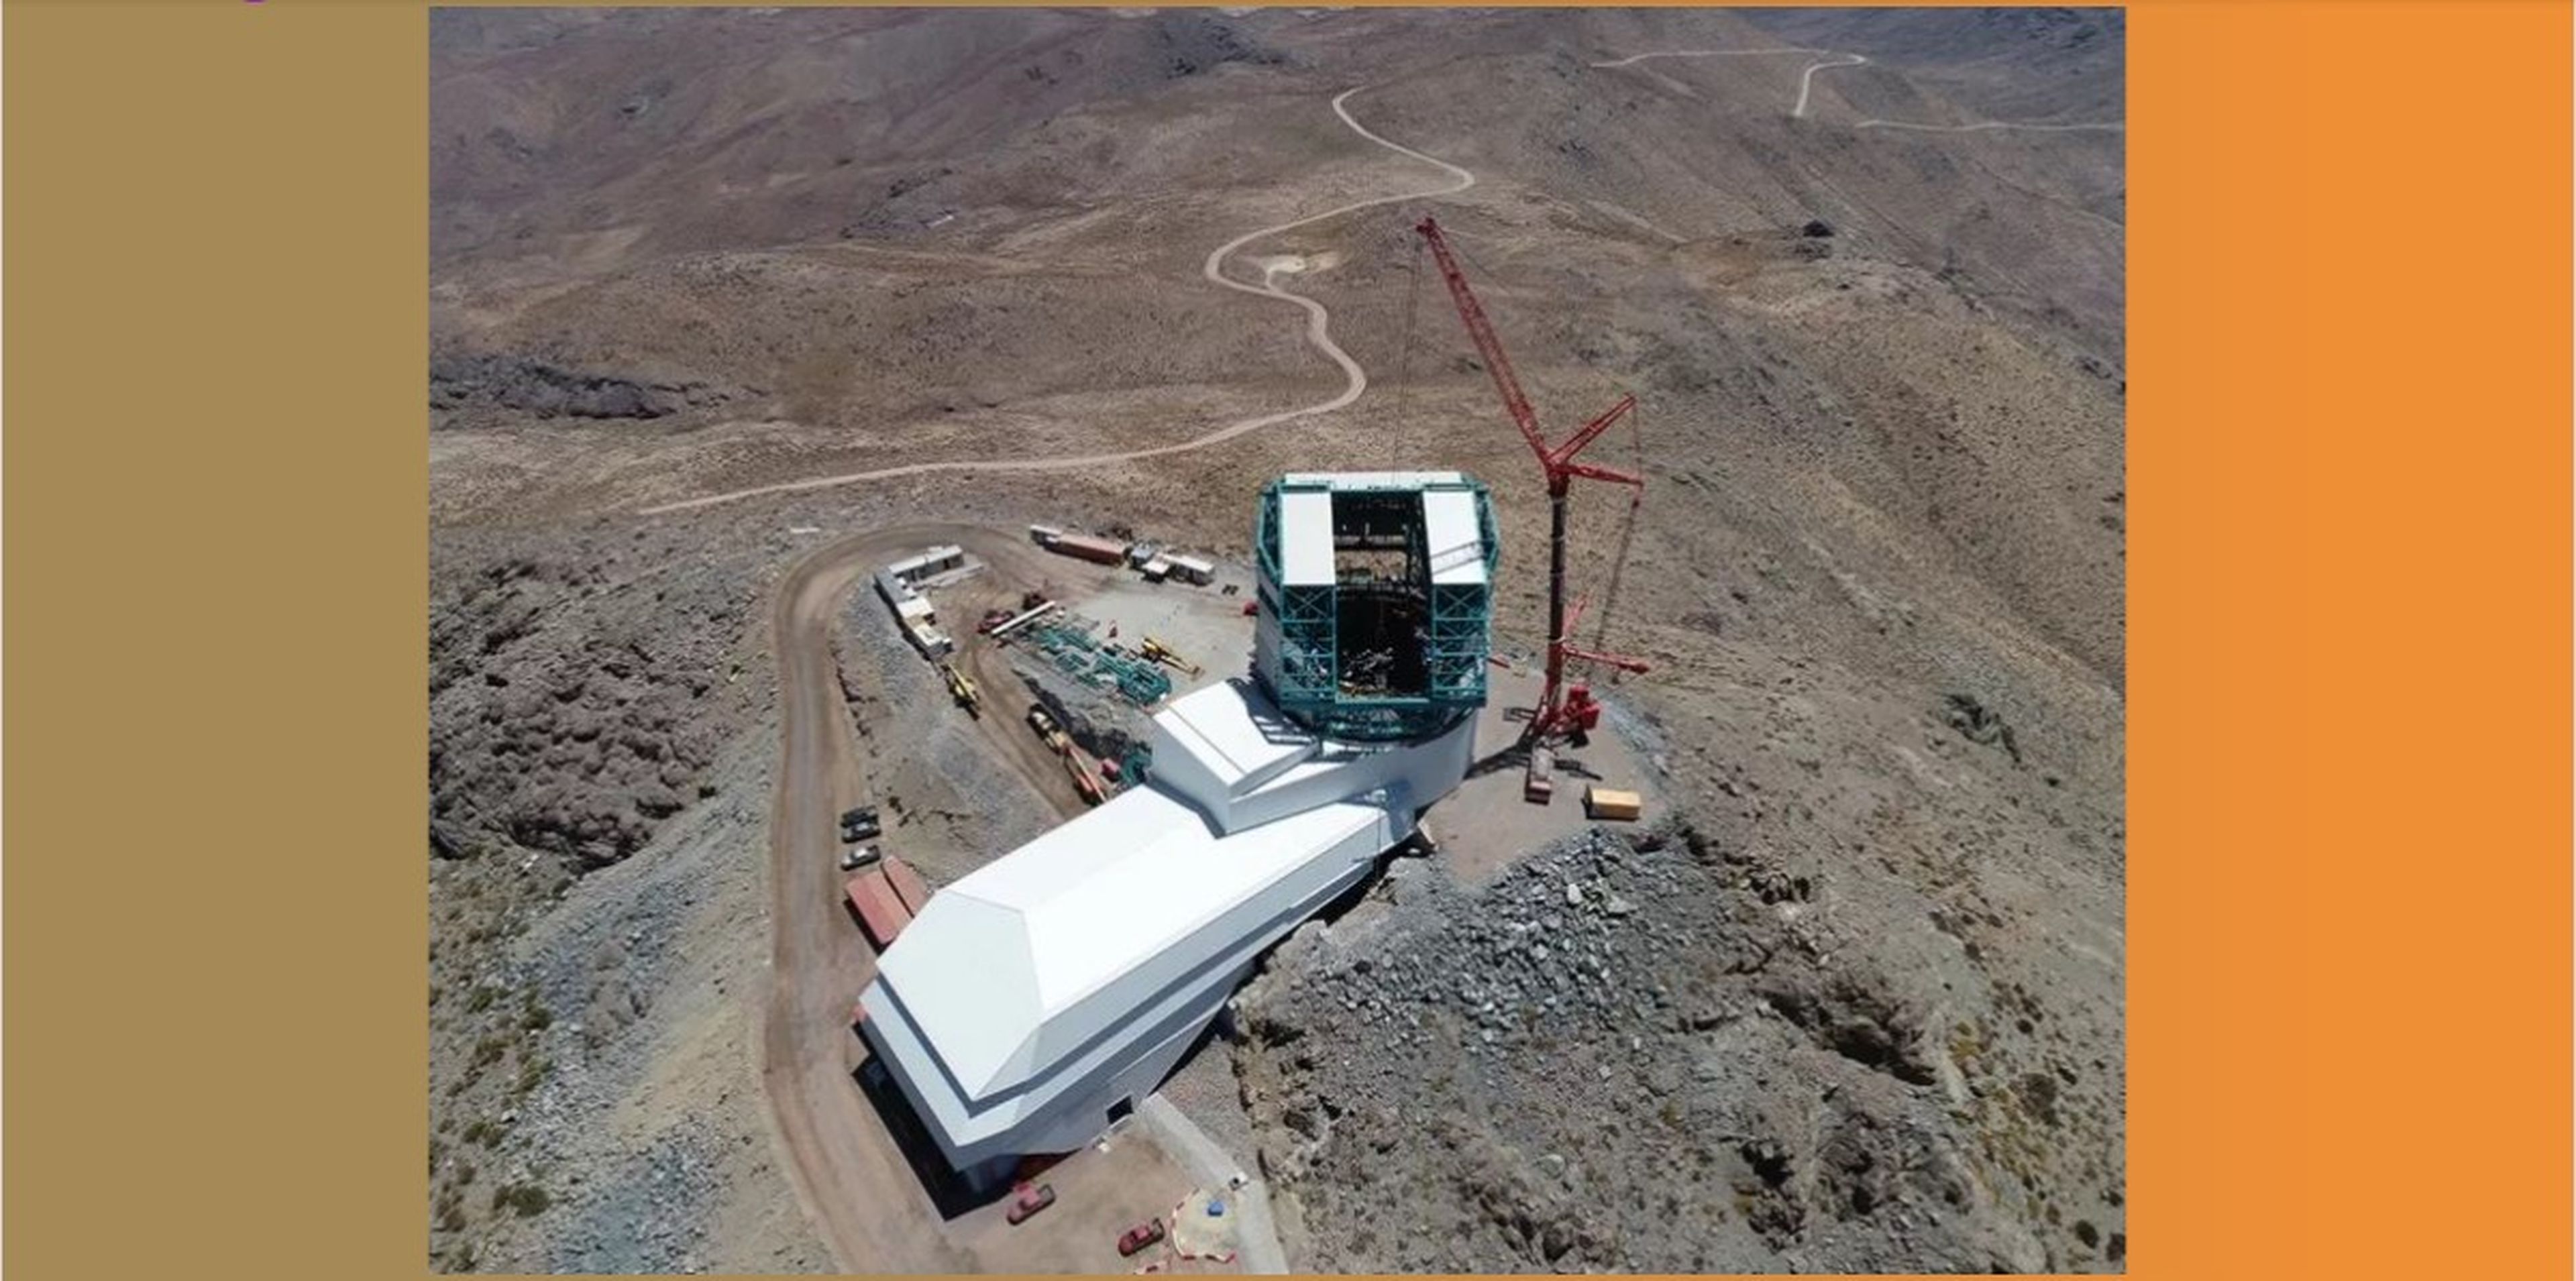 El observatorio Rubin está siendo construido en la cima del cerro Pachón, a 2.682 m sobre el nivel del mar en el norte de Chile